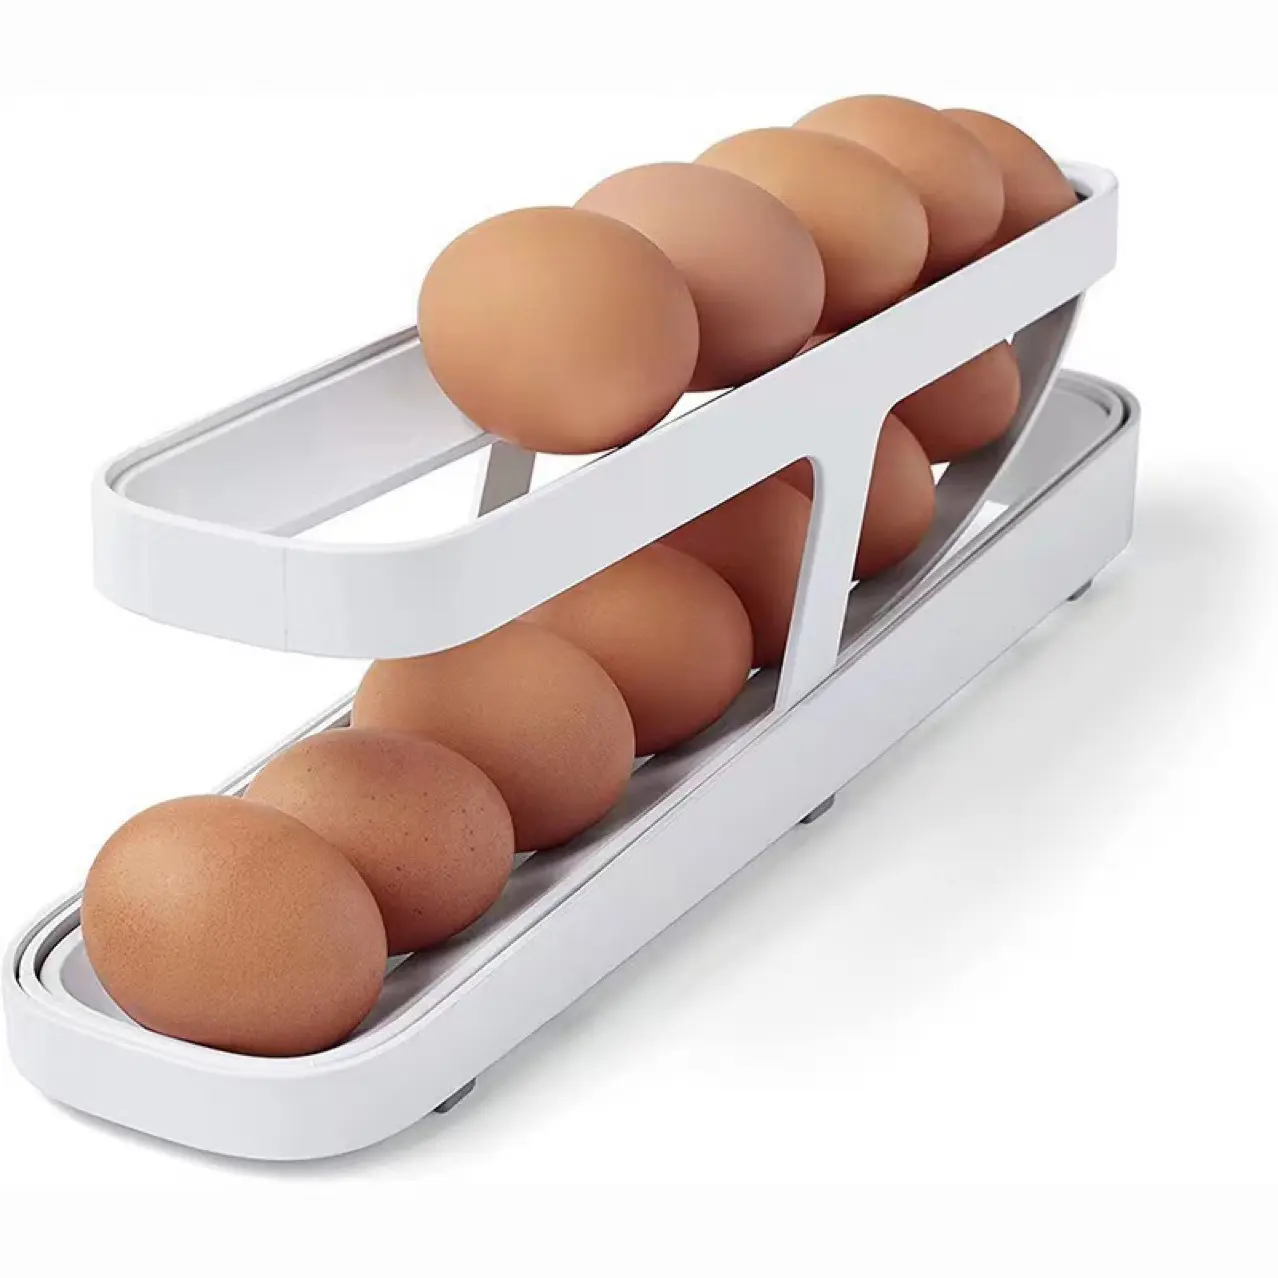 Haddeleme yumurta tutucu için buzdolabı otomatik haddeleme yumurta saklama kabı 2 katmanlı haddeleme yumurta kaya dağıtıcı